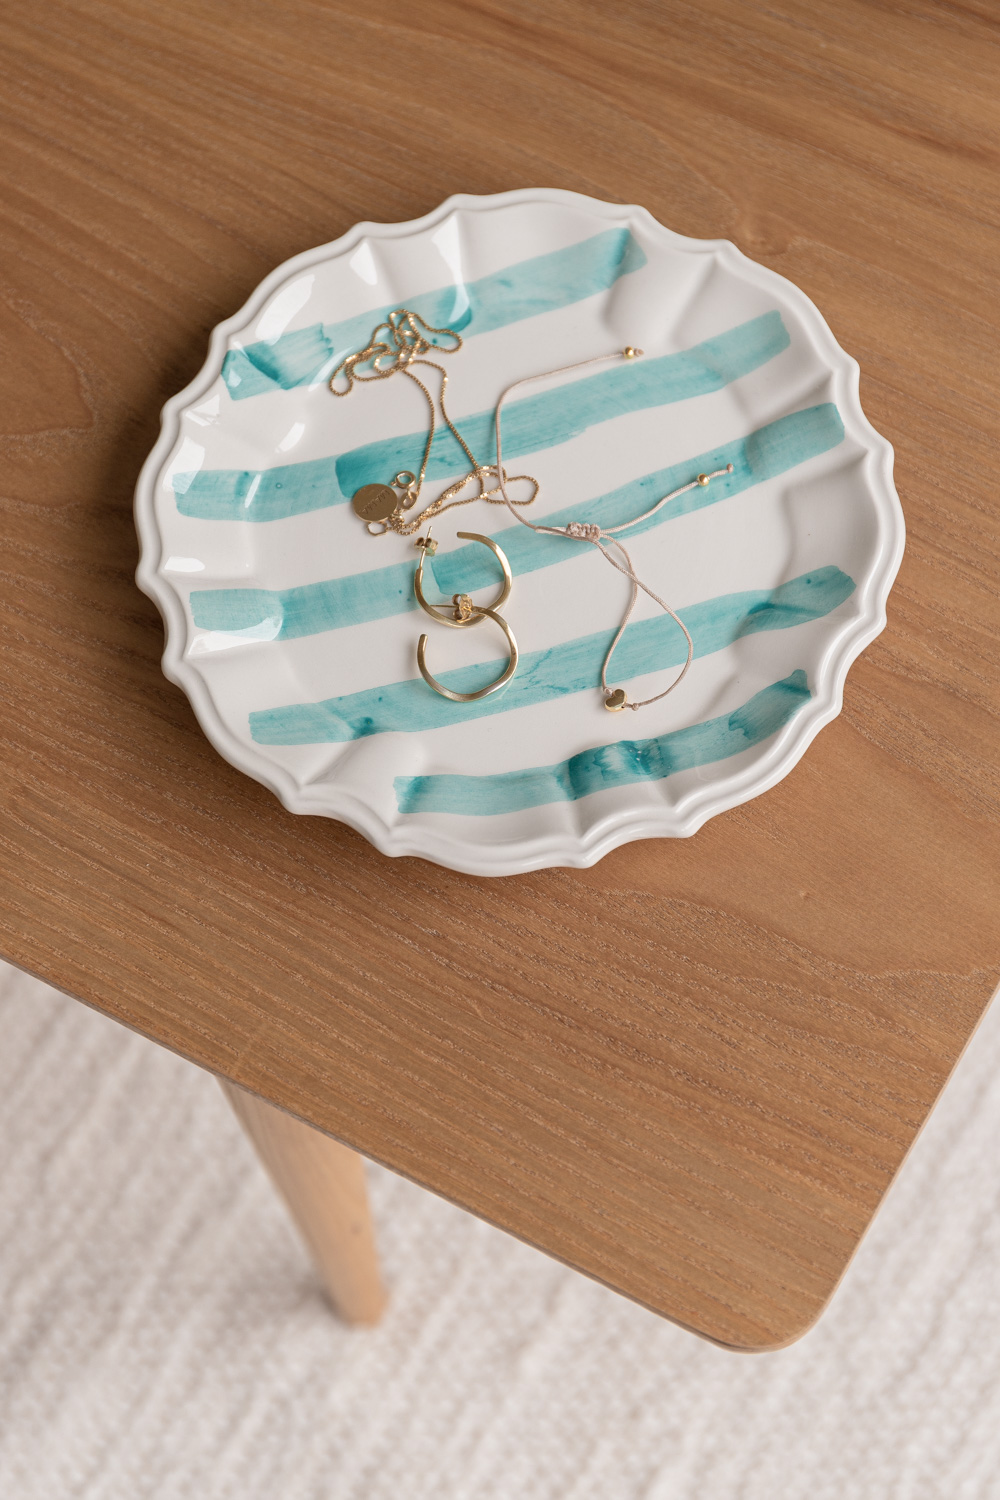 Grandma Dessert Plate - Turquoise